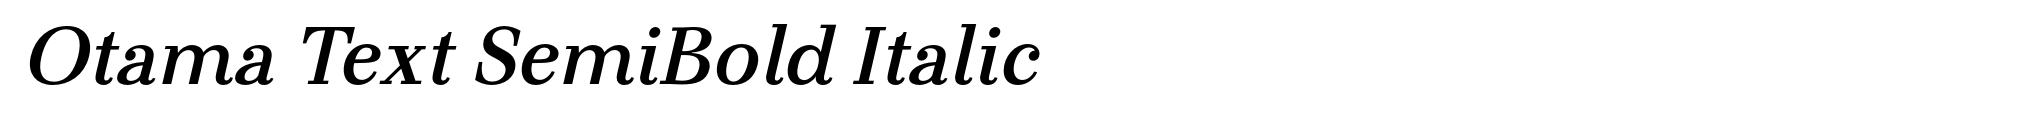 Otama Text SemiBold Italic image